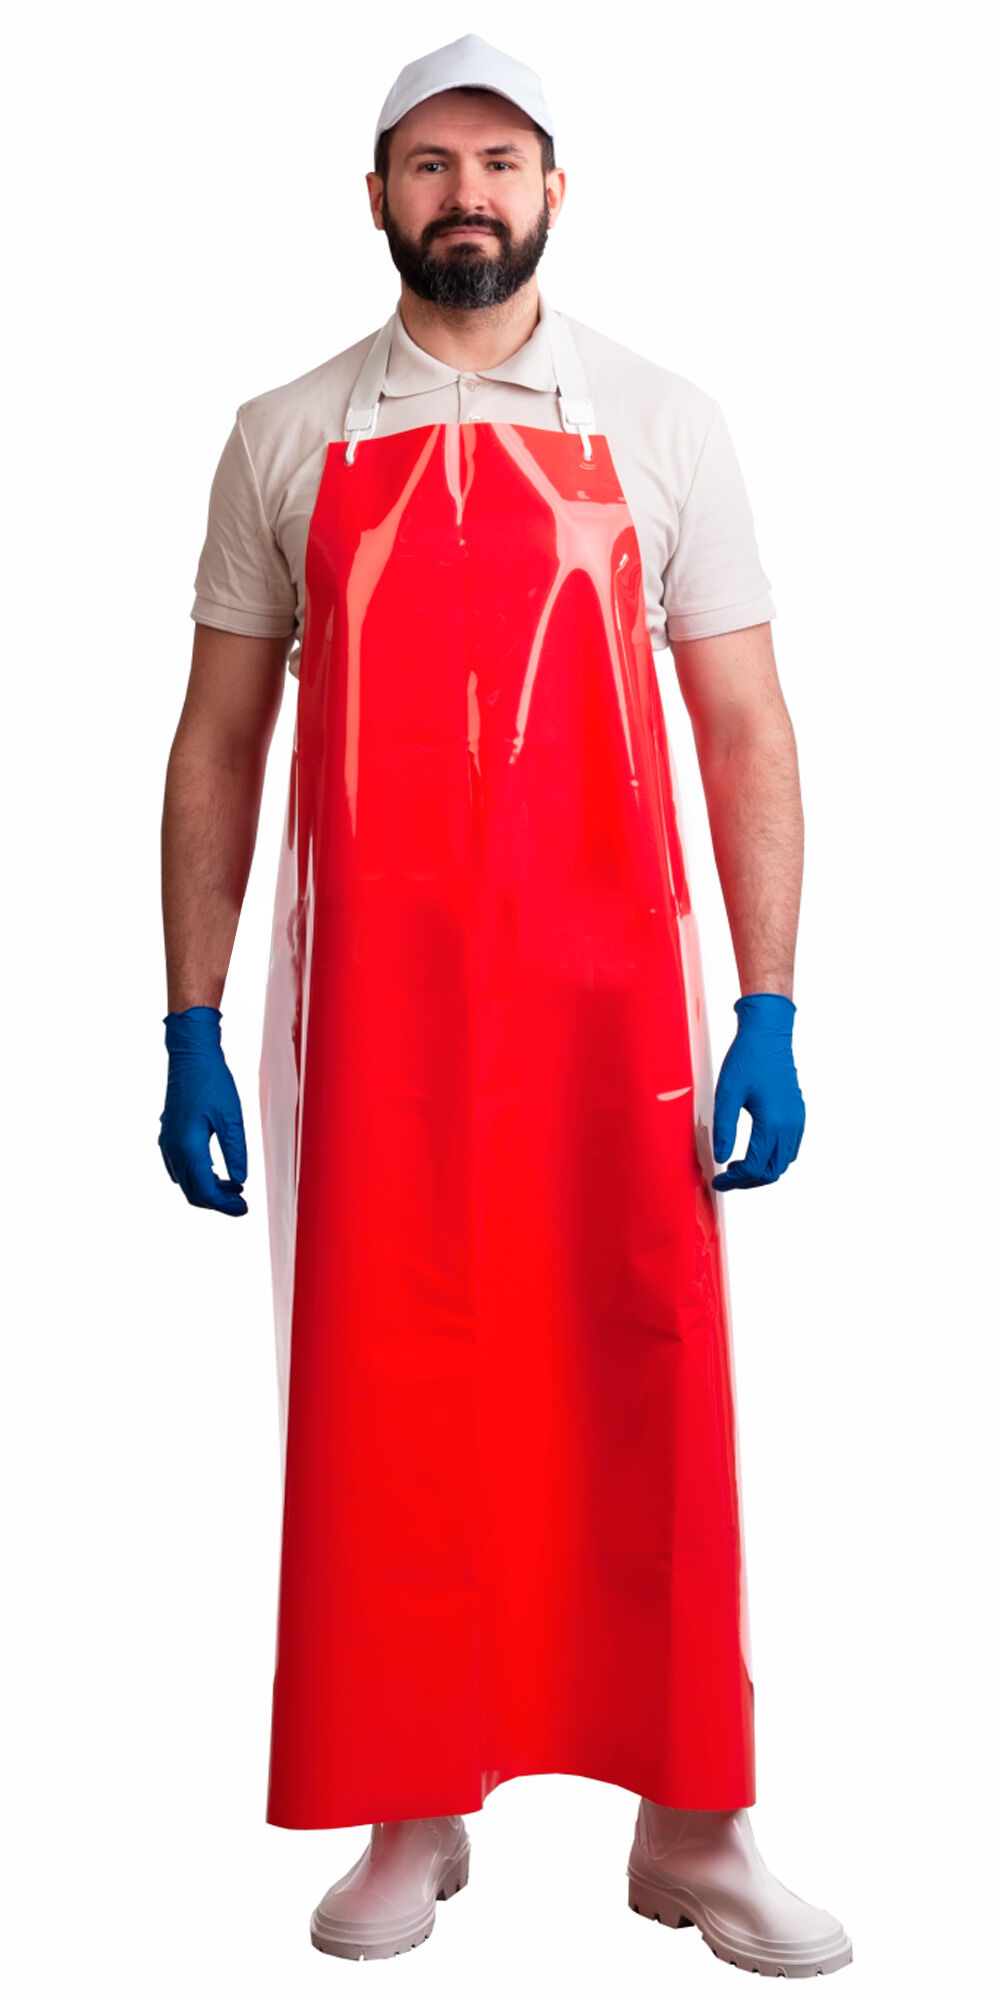 Фартук полиуретановый ЛАРИПОЛ уплотненный красный, толщина 0,3 мм, р.90см х115 см (ФАР013) (х12)